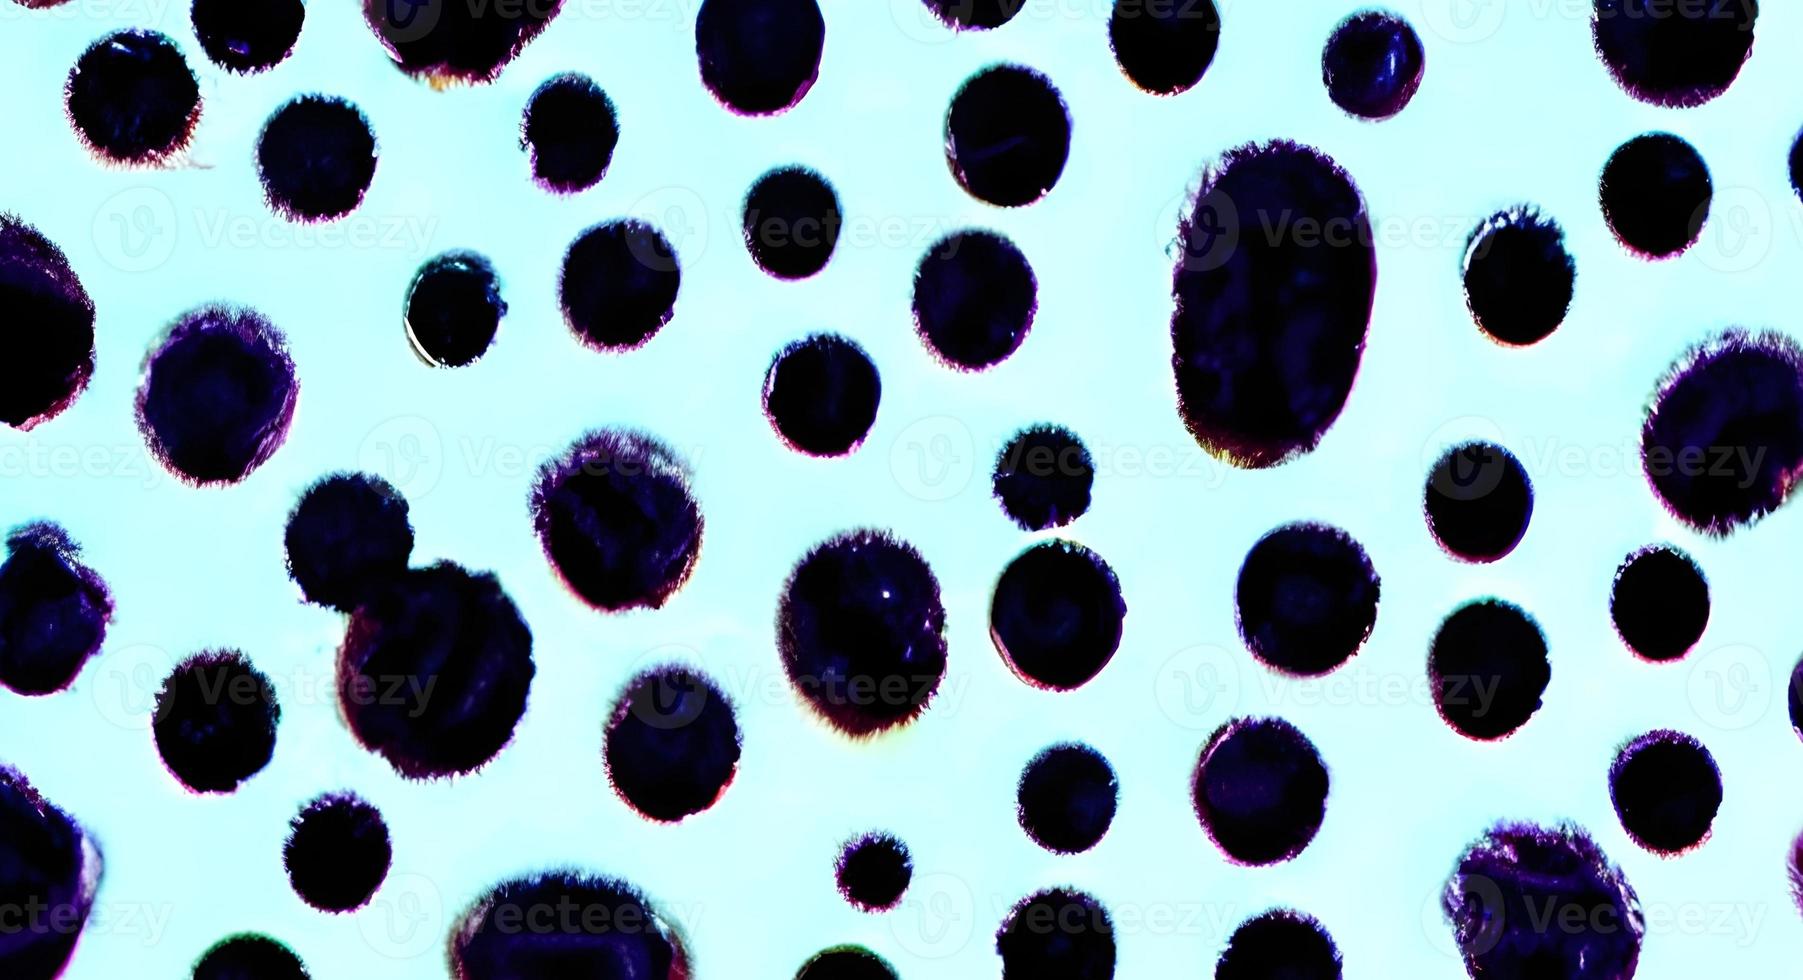 vírus microscópicos realistas de várias formas na ilustração de padrão sem costura de fundo azul desfocado foto